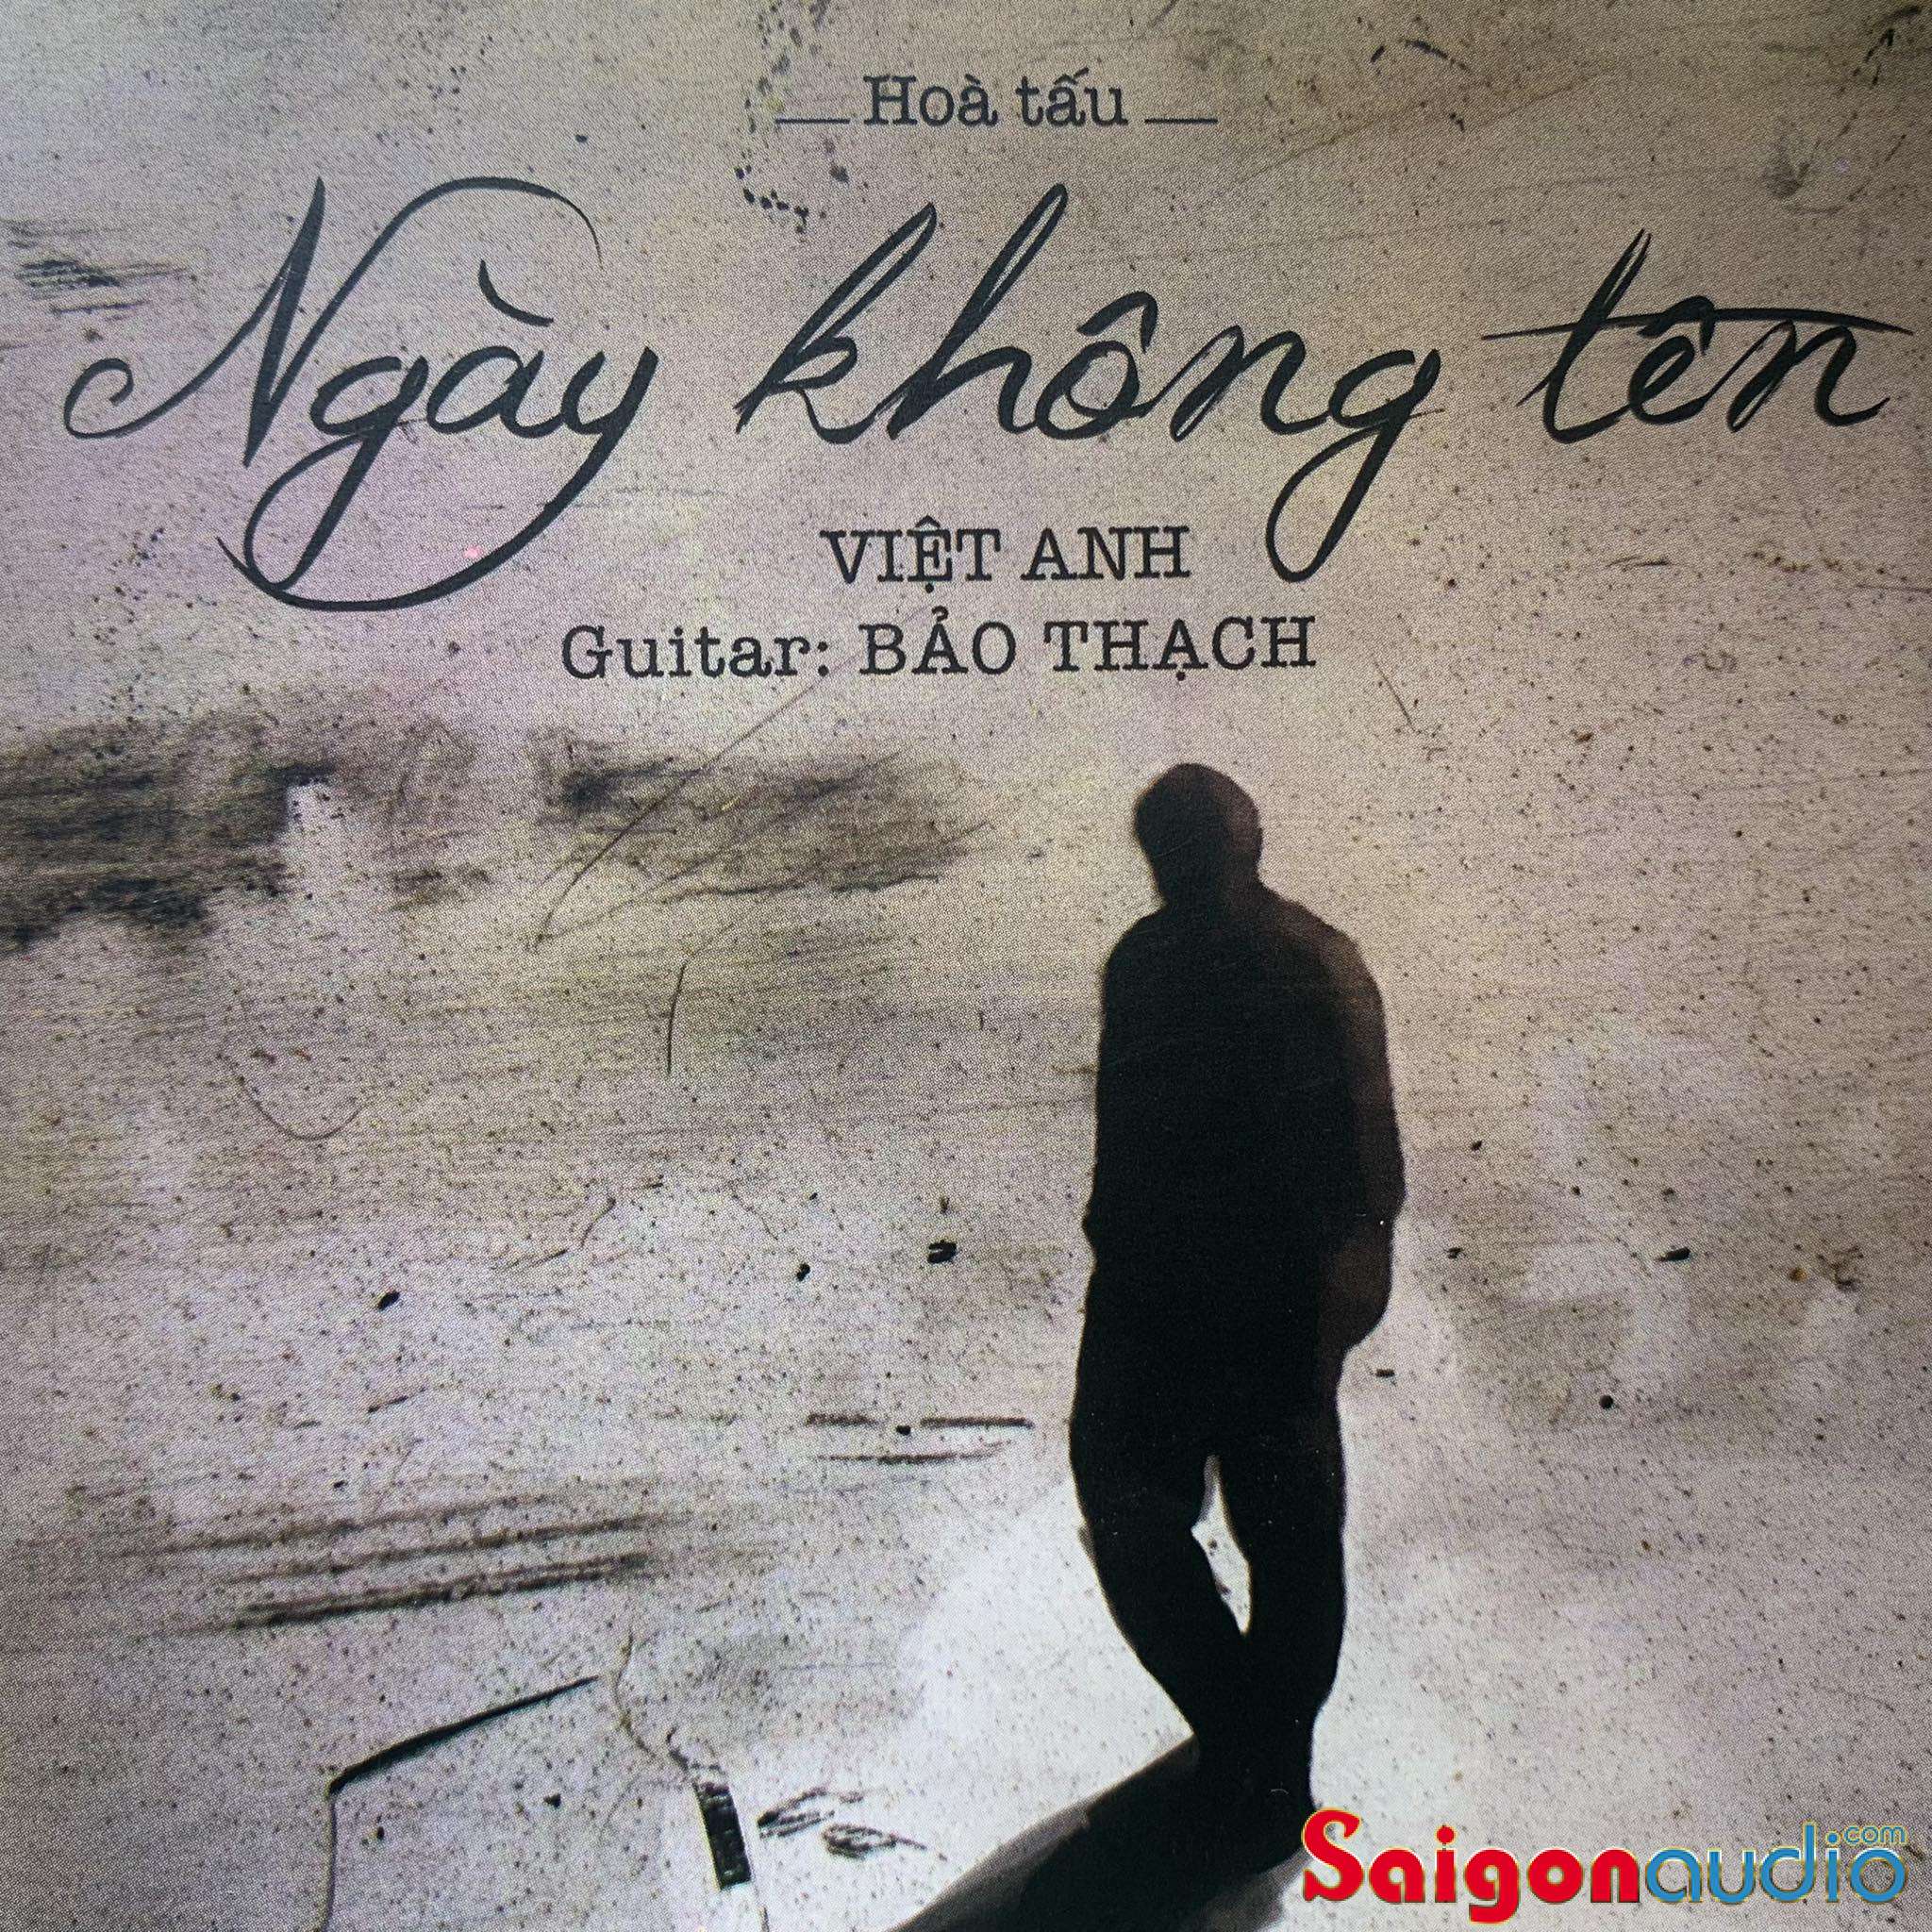 Đĩa CD gốc Việt Anh - Ngày Không Tên - Guitar Bảo Thạch (Free ship khi mua 2 đĩa CD cùng hoặc khác loại)